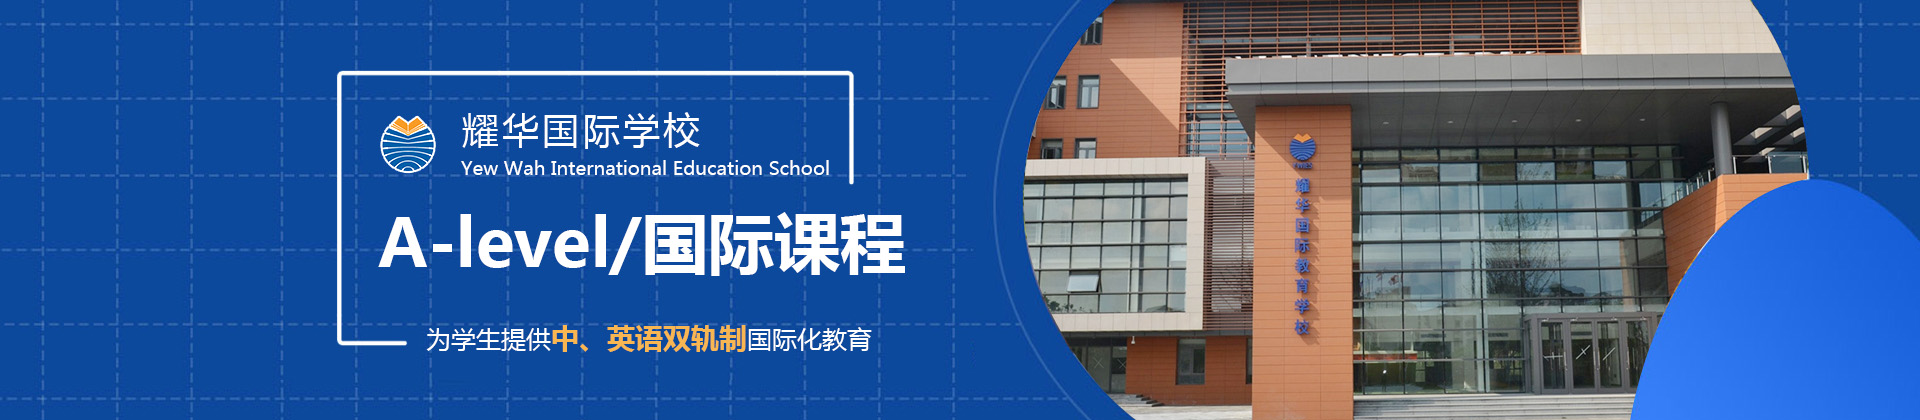 上海耀华国际学校